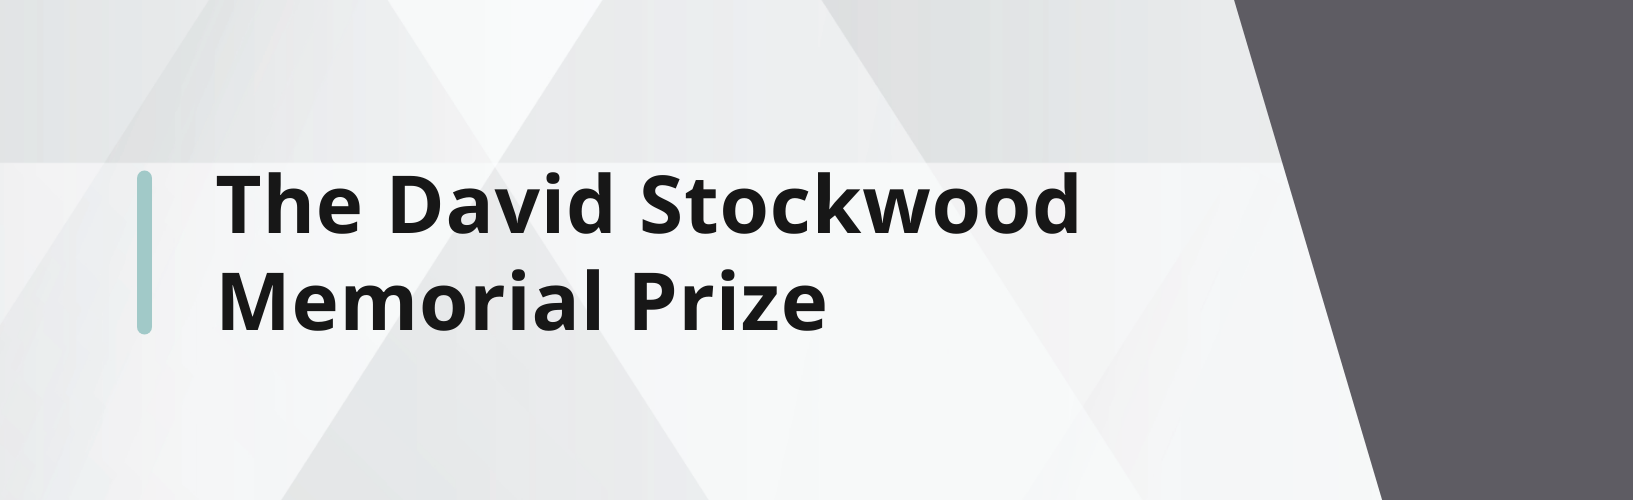 The David Stockwood Memorial Prize